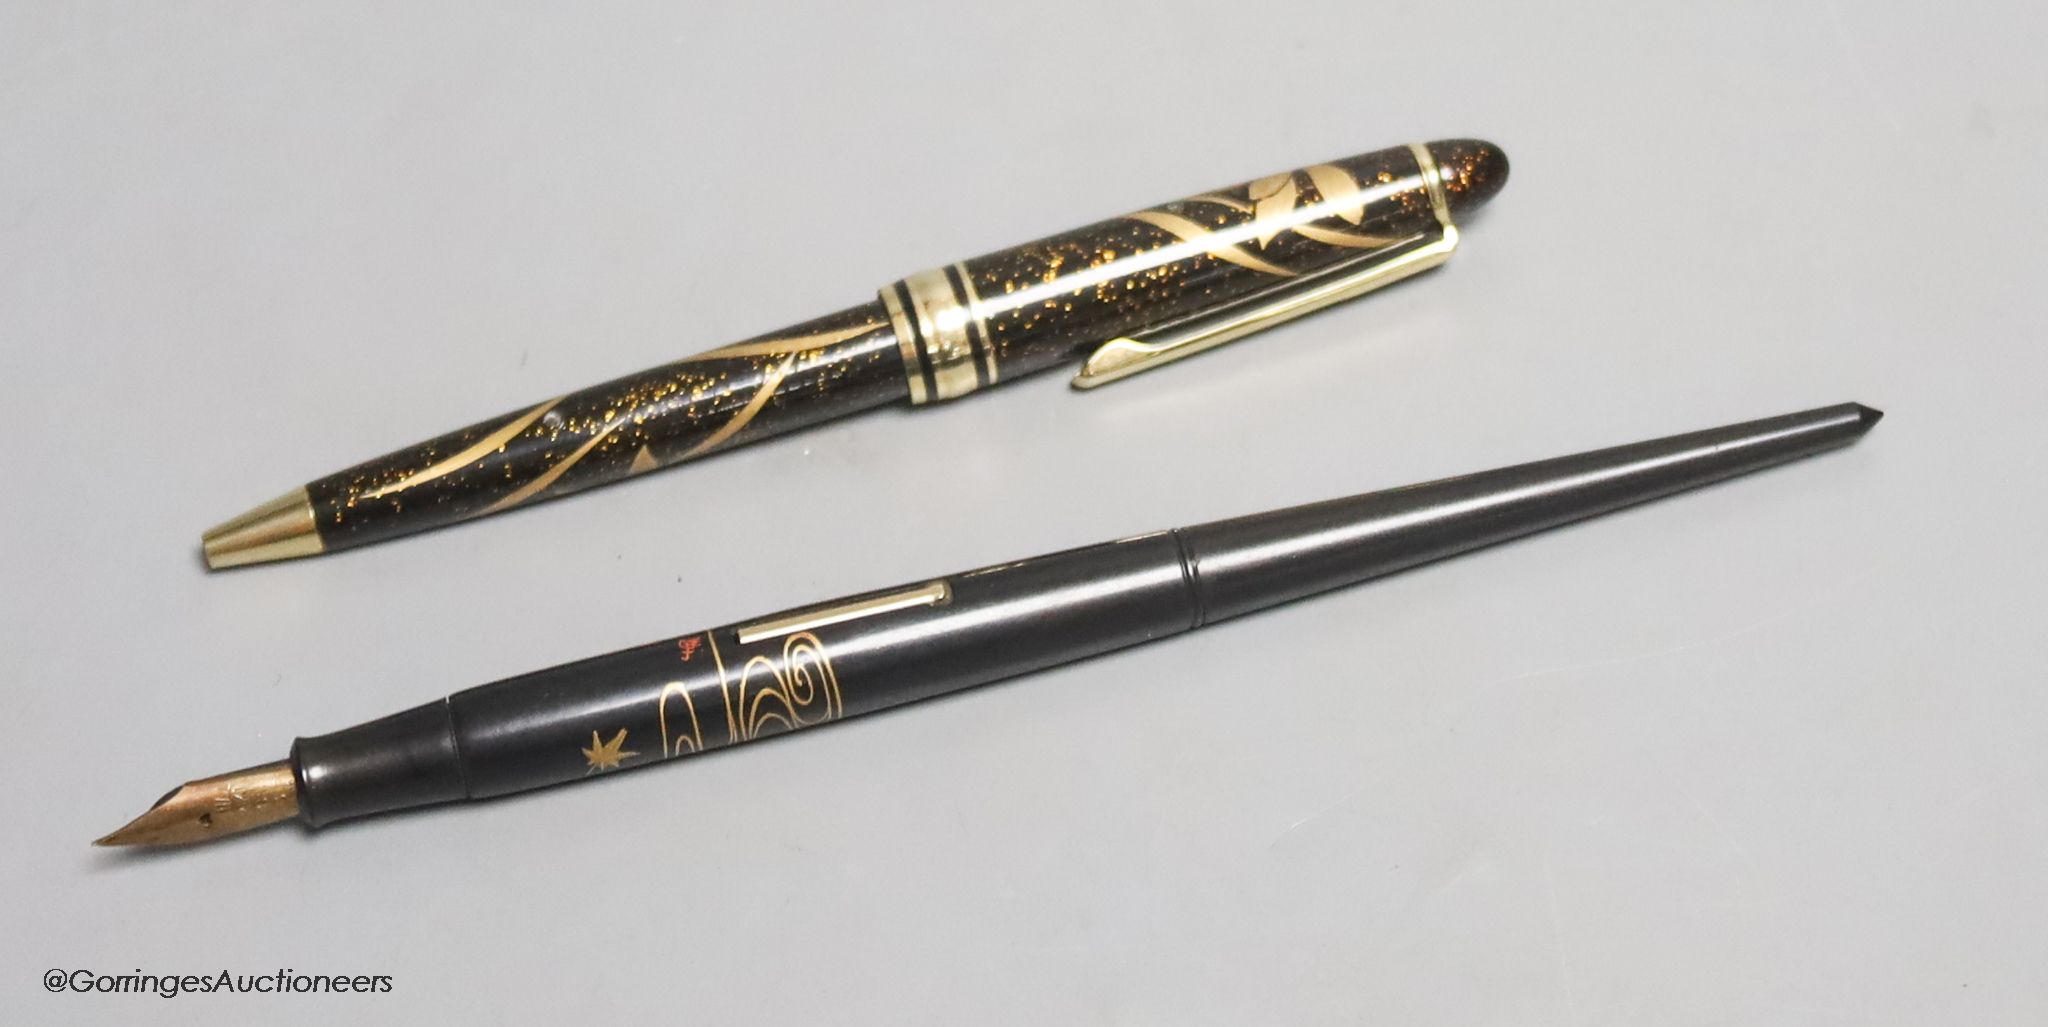 A Japanese lacquer maki-e dip style fountain pen with Dunhill Namiki nib, and a maki-e ballpoint pen